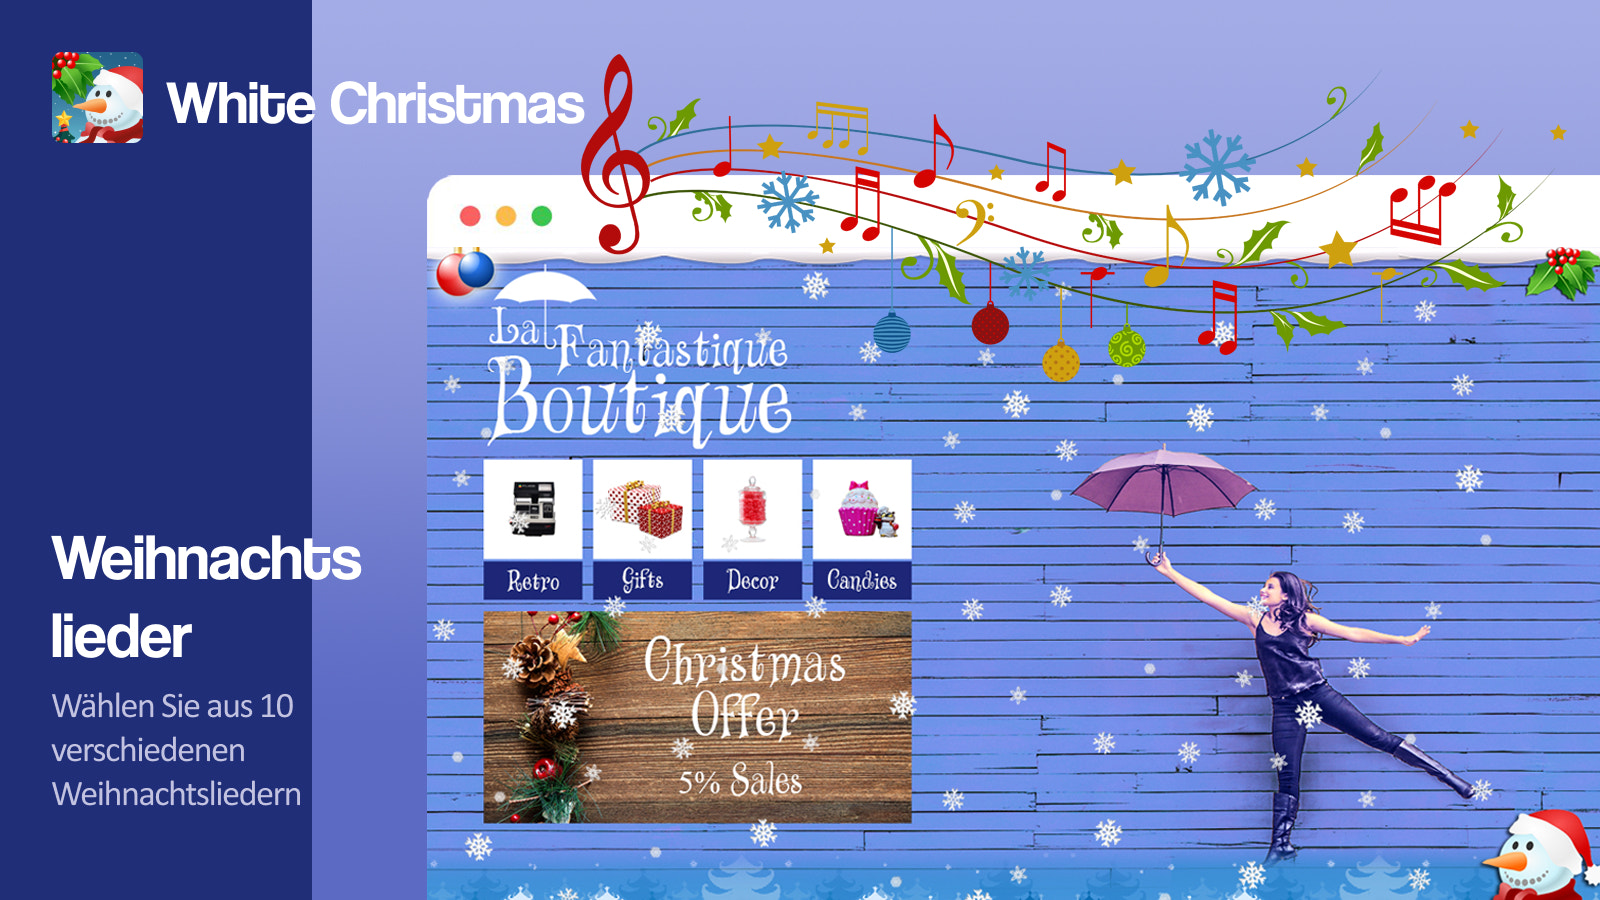 Wählen Sie zwischen zehn verschiedenen Weihnachtsliedern